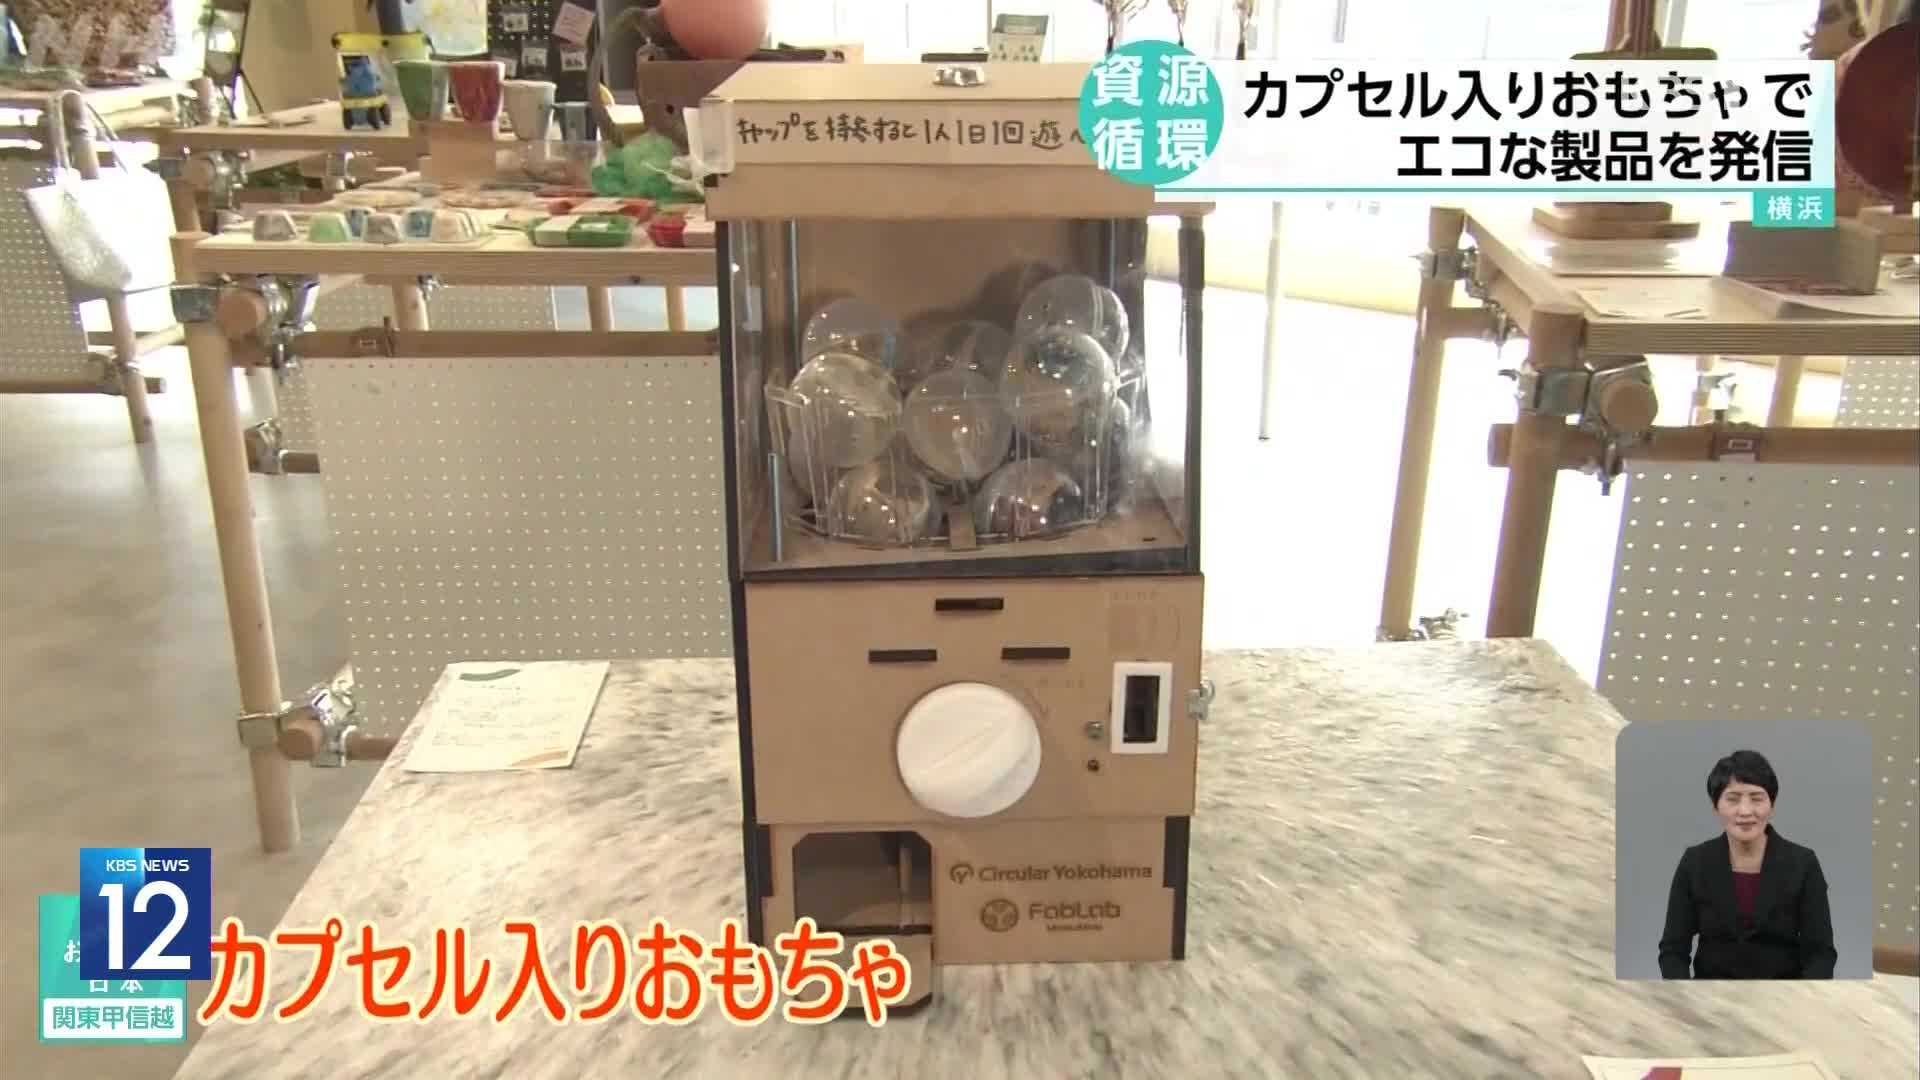 일본, 페트병 뚜껑을 재활용한 캡슐 장난감